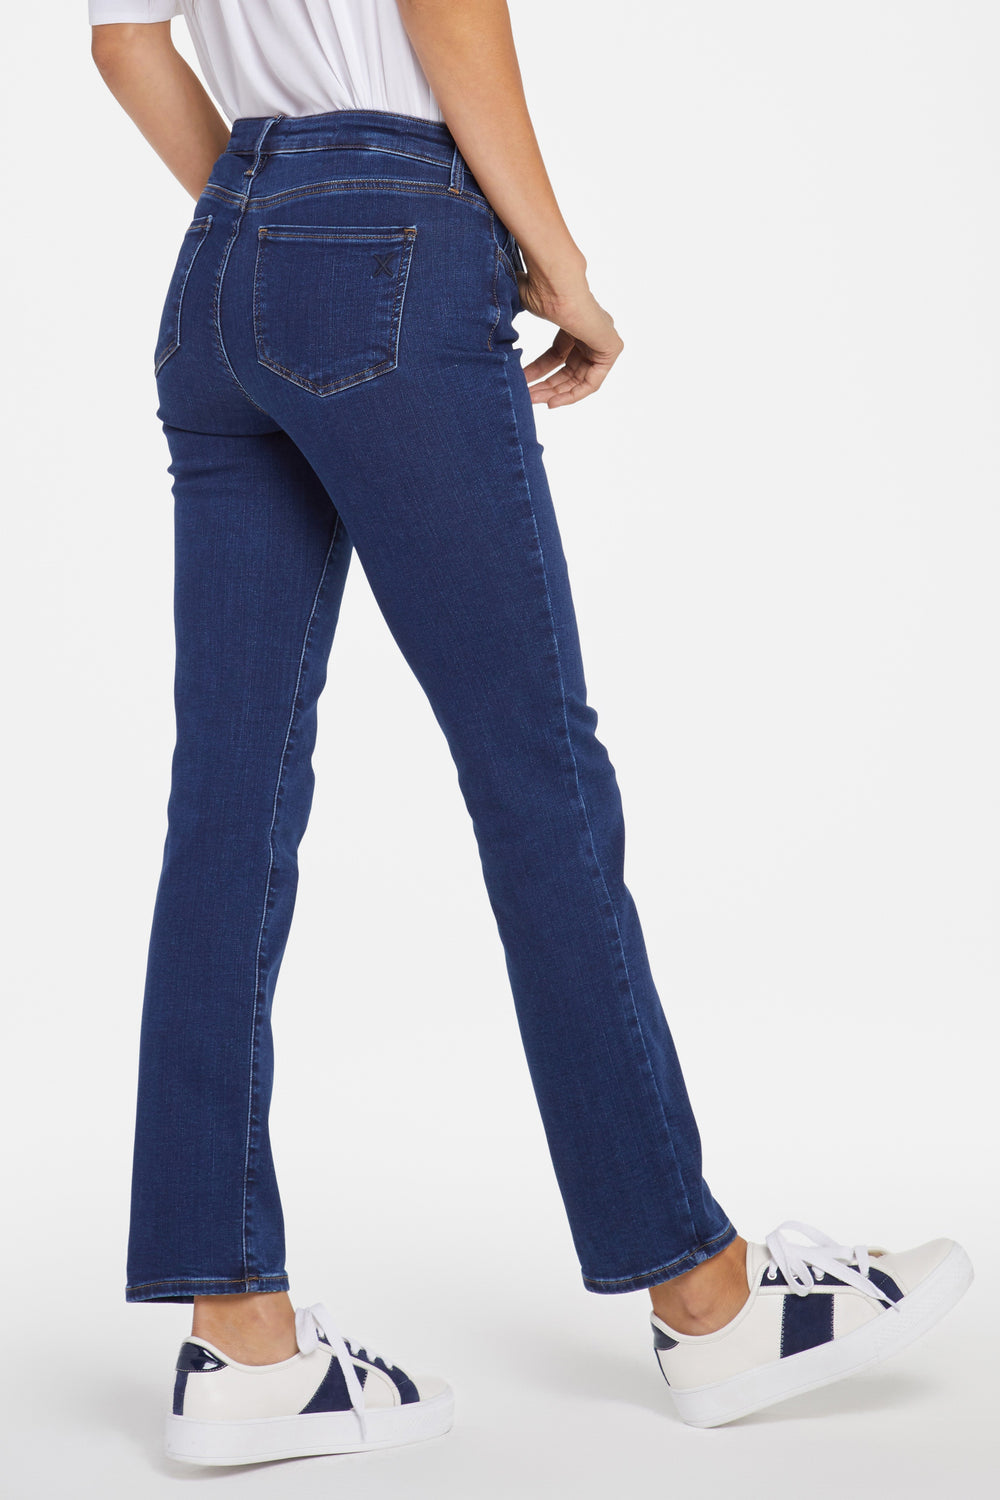 Women's NYDJ Jeans